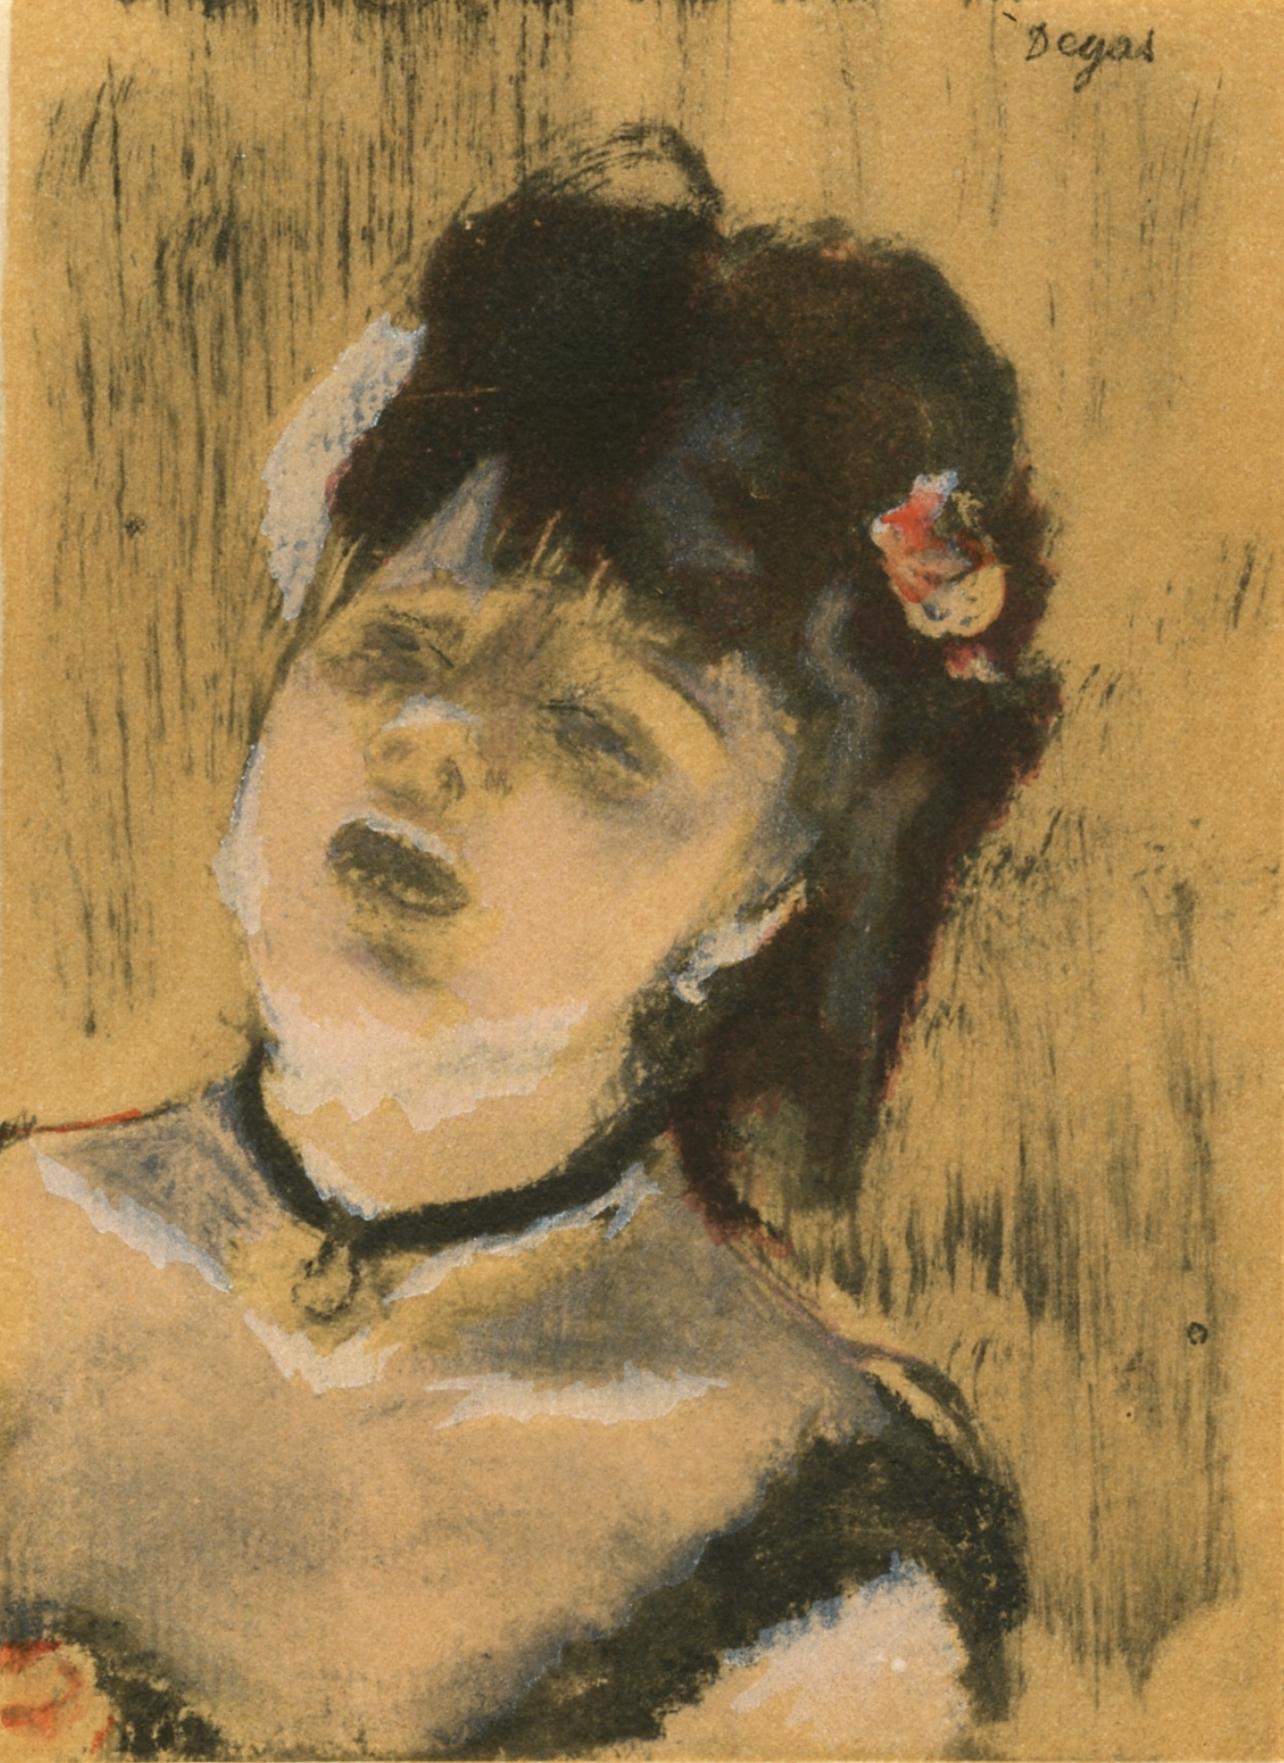 Degas, La Chanteuse du Cafe-Concert, Les Monotypes (after)